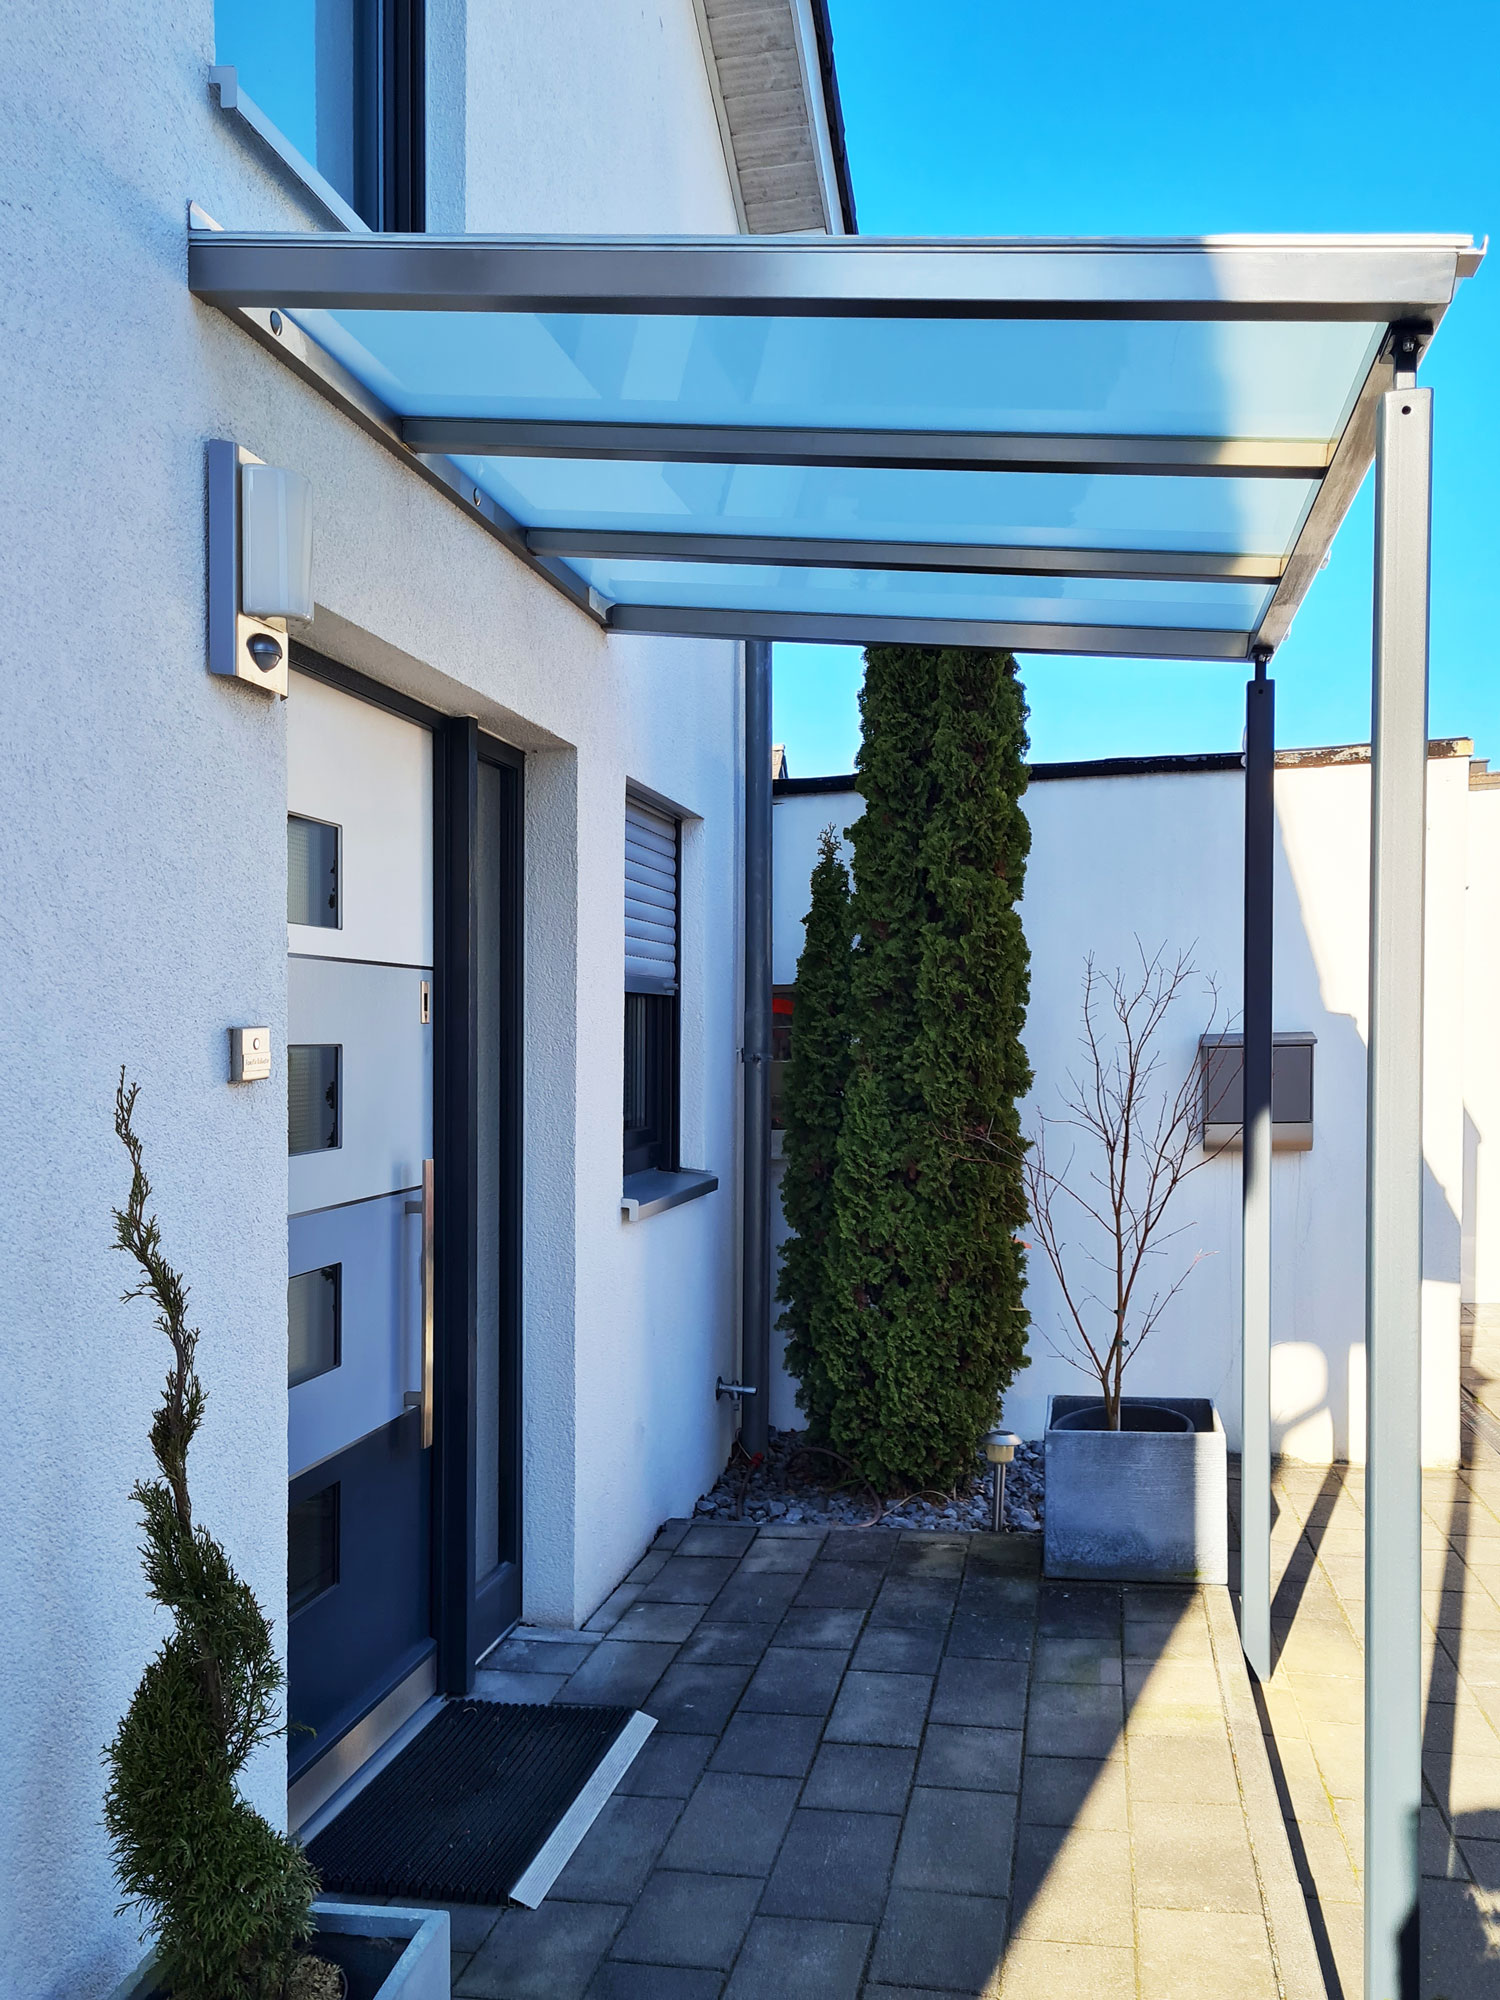 Edelstahlschlosserei Nappenfeld aus Mühlheim fertigt Vordach für Einfamilienhaus in Ratingen an